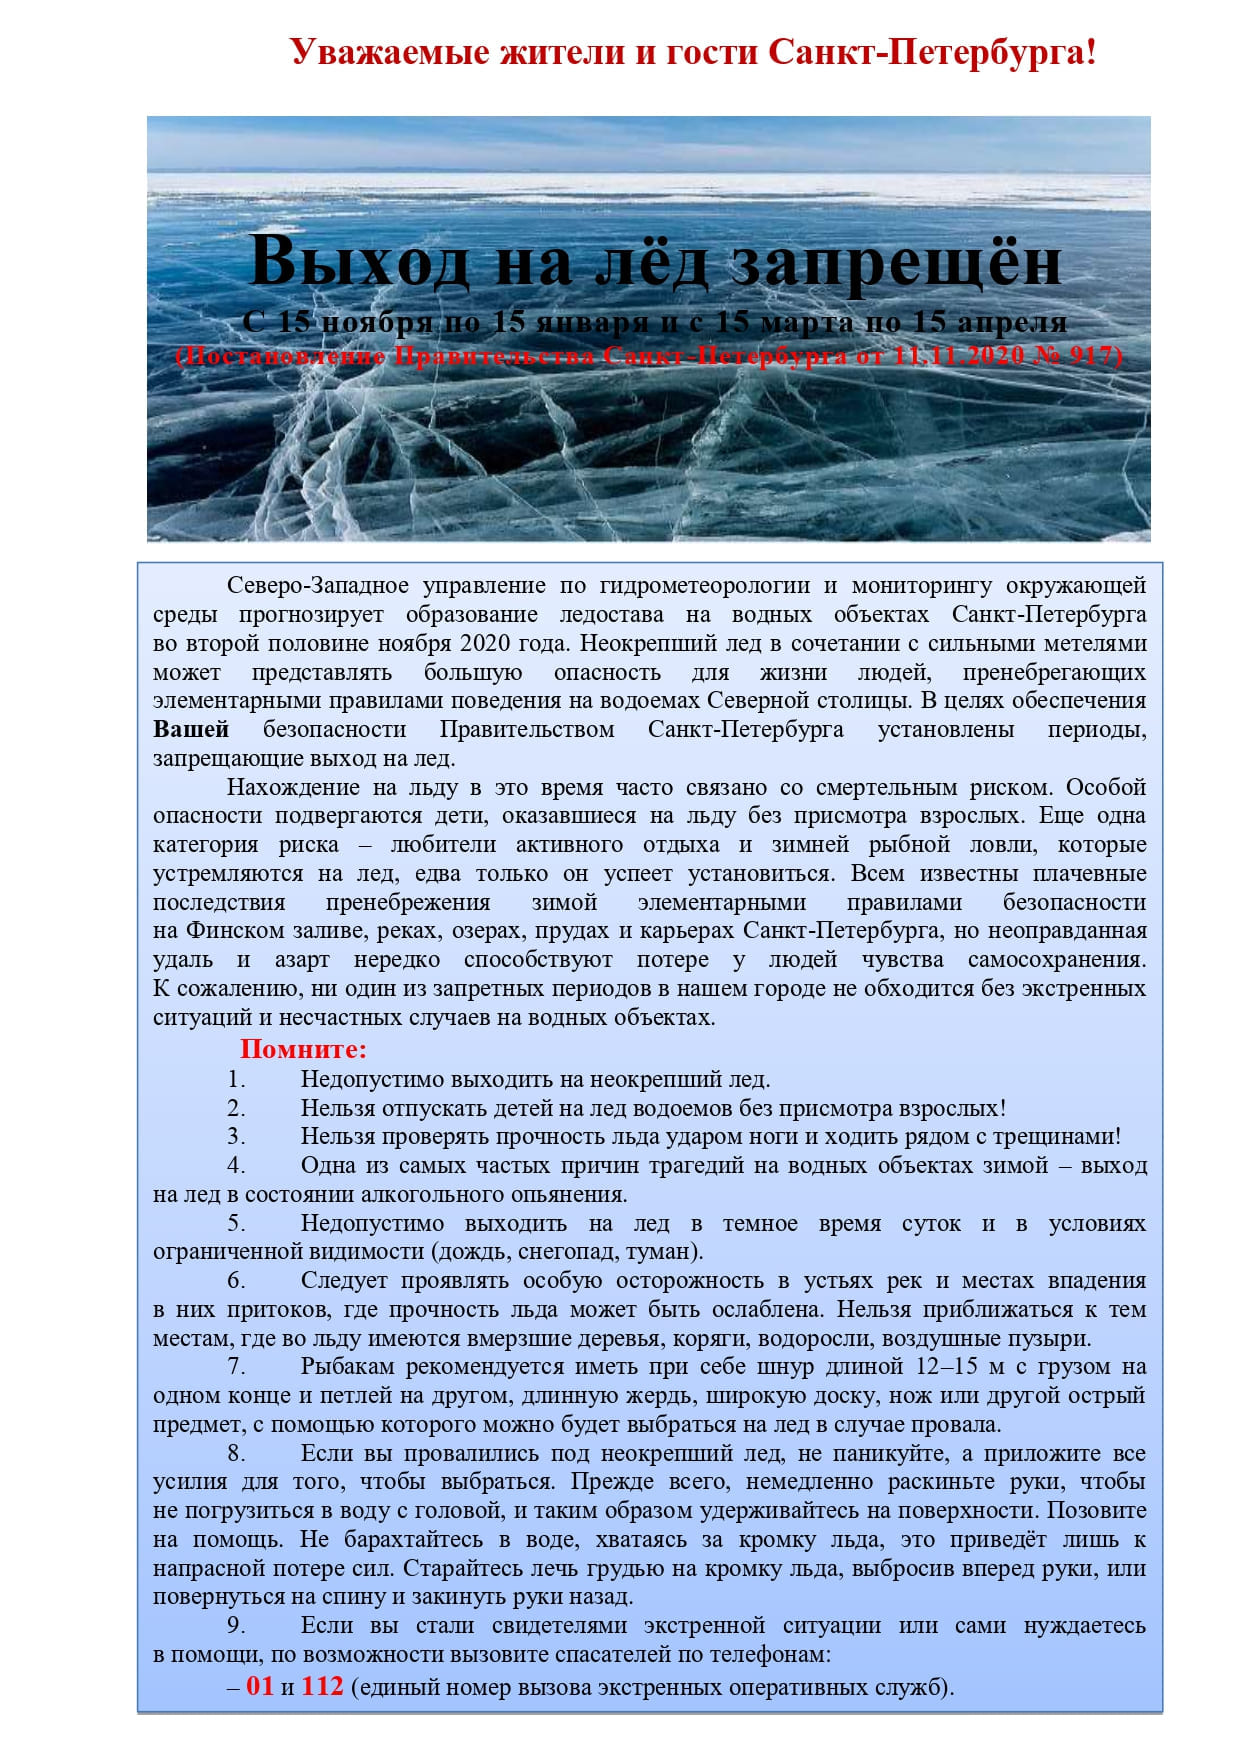 Pamyatka led zvetnaya page 0001 1